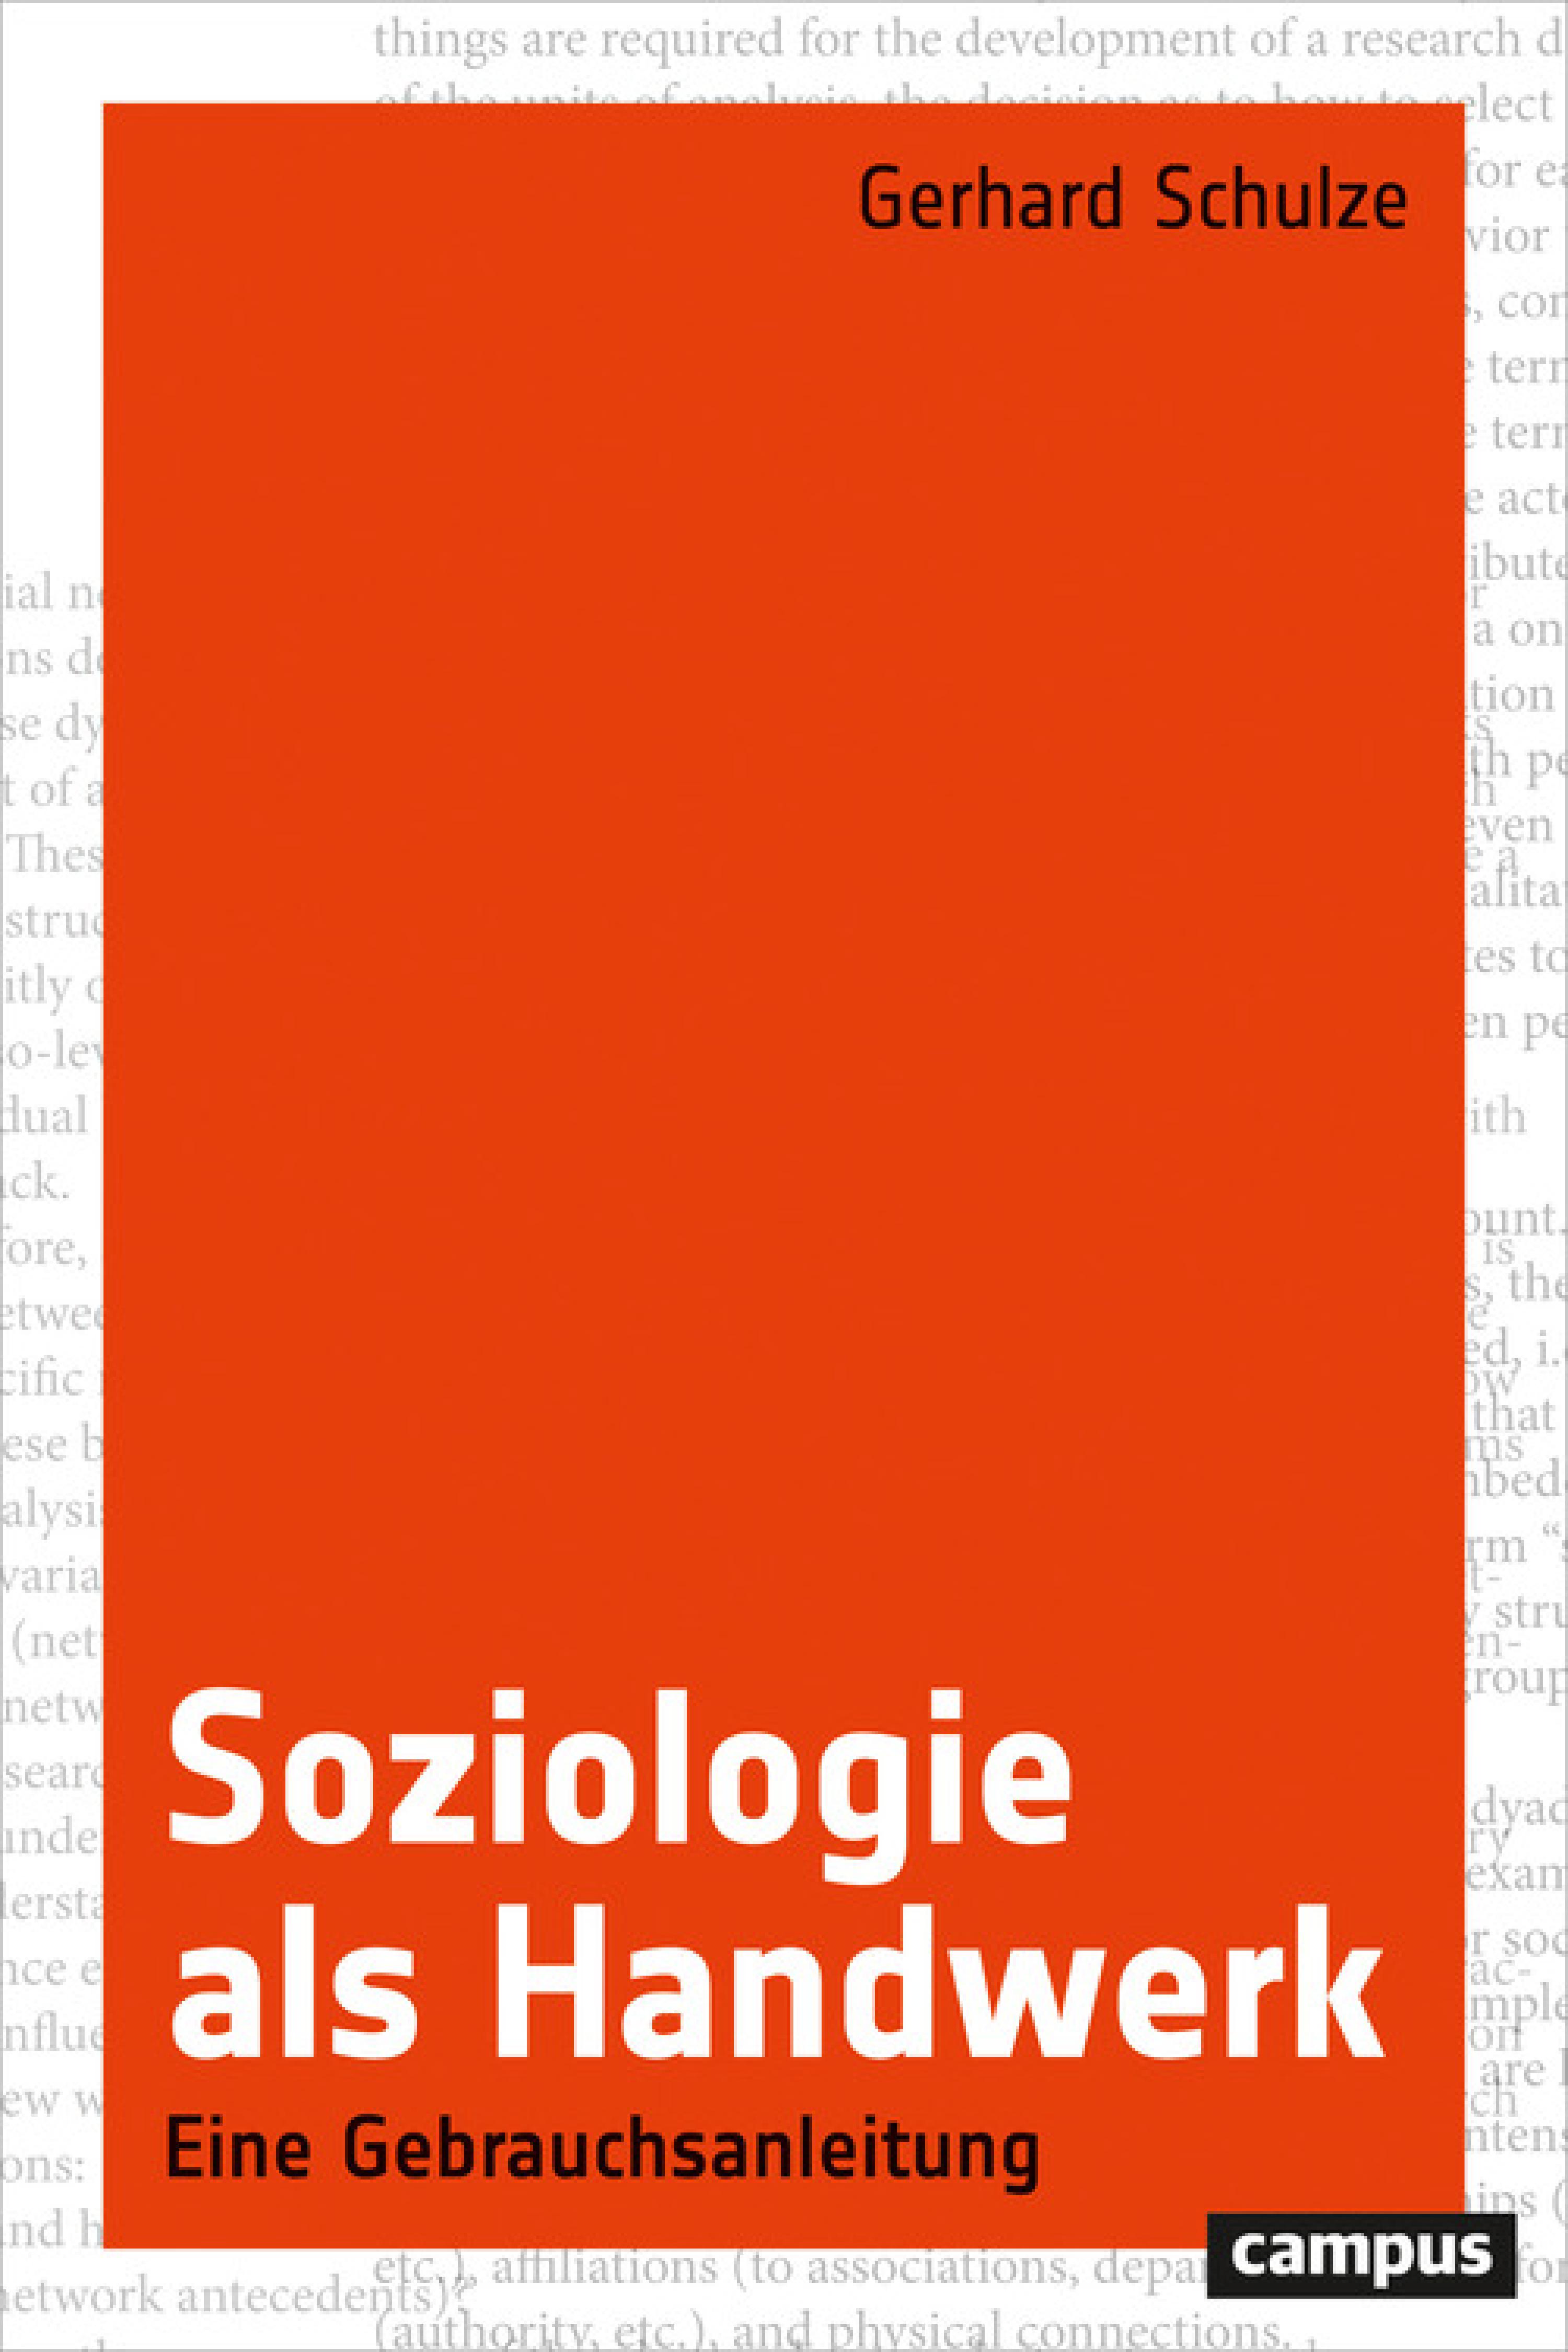 Soziologie als Handwerk